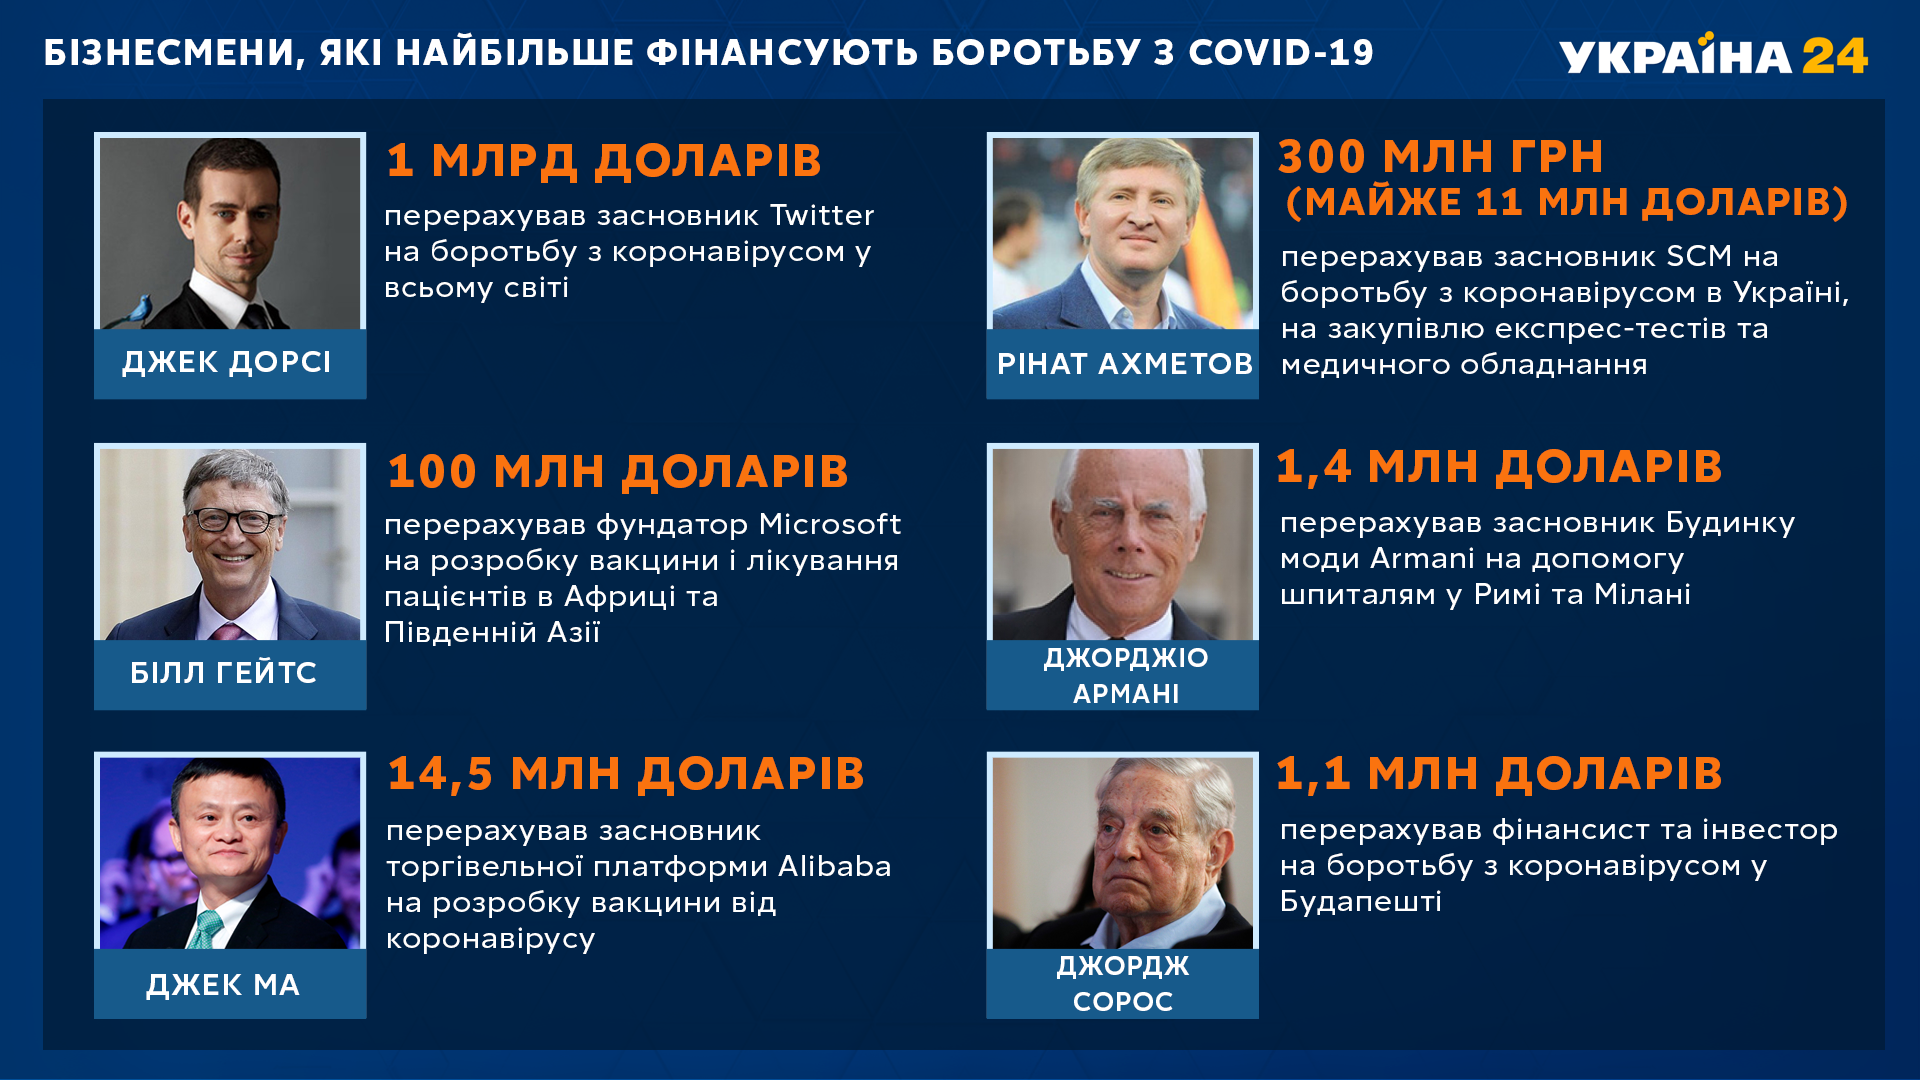 Ринат Ахметов в списке мировых бизнесменов, которые больше всего финансируют борьбу с COVID-19